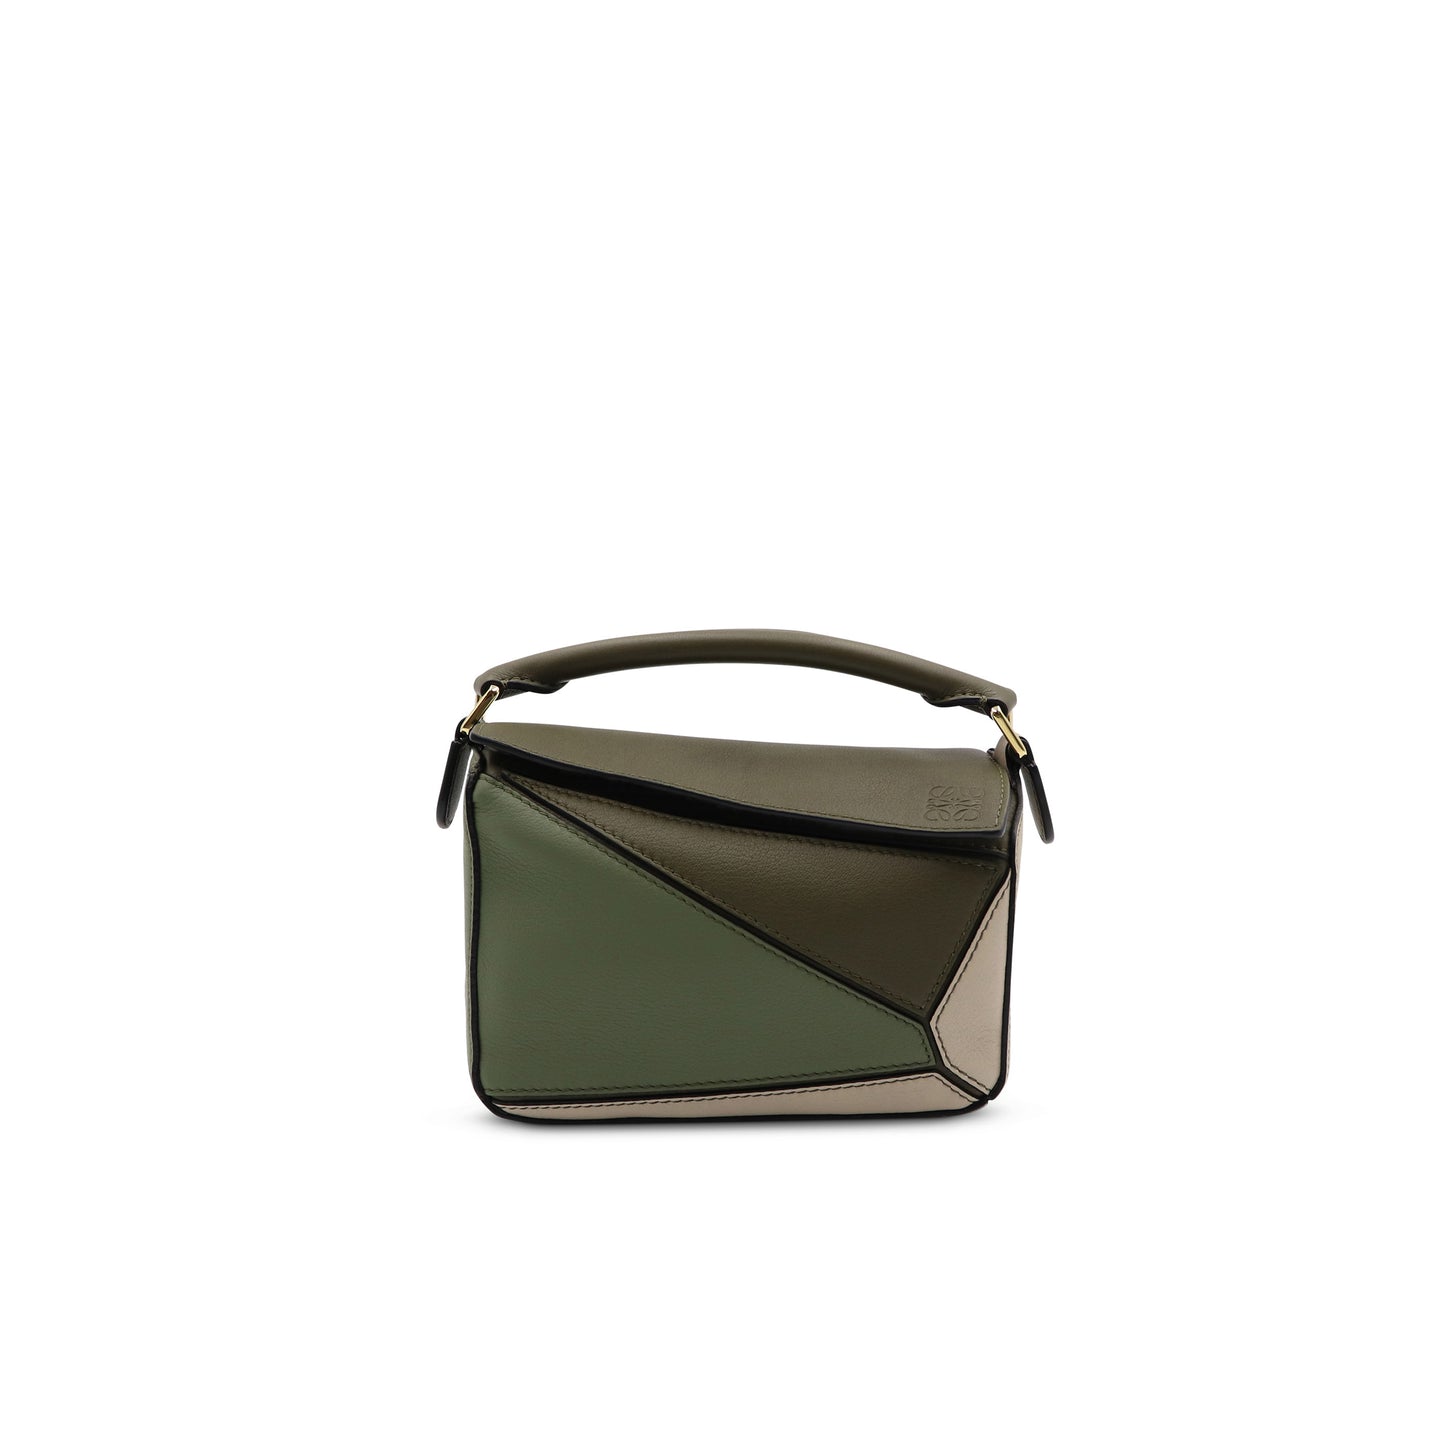 Mini Puzzle Bag in Classic Calfskin in Green/Light Oat